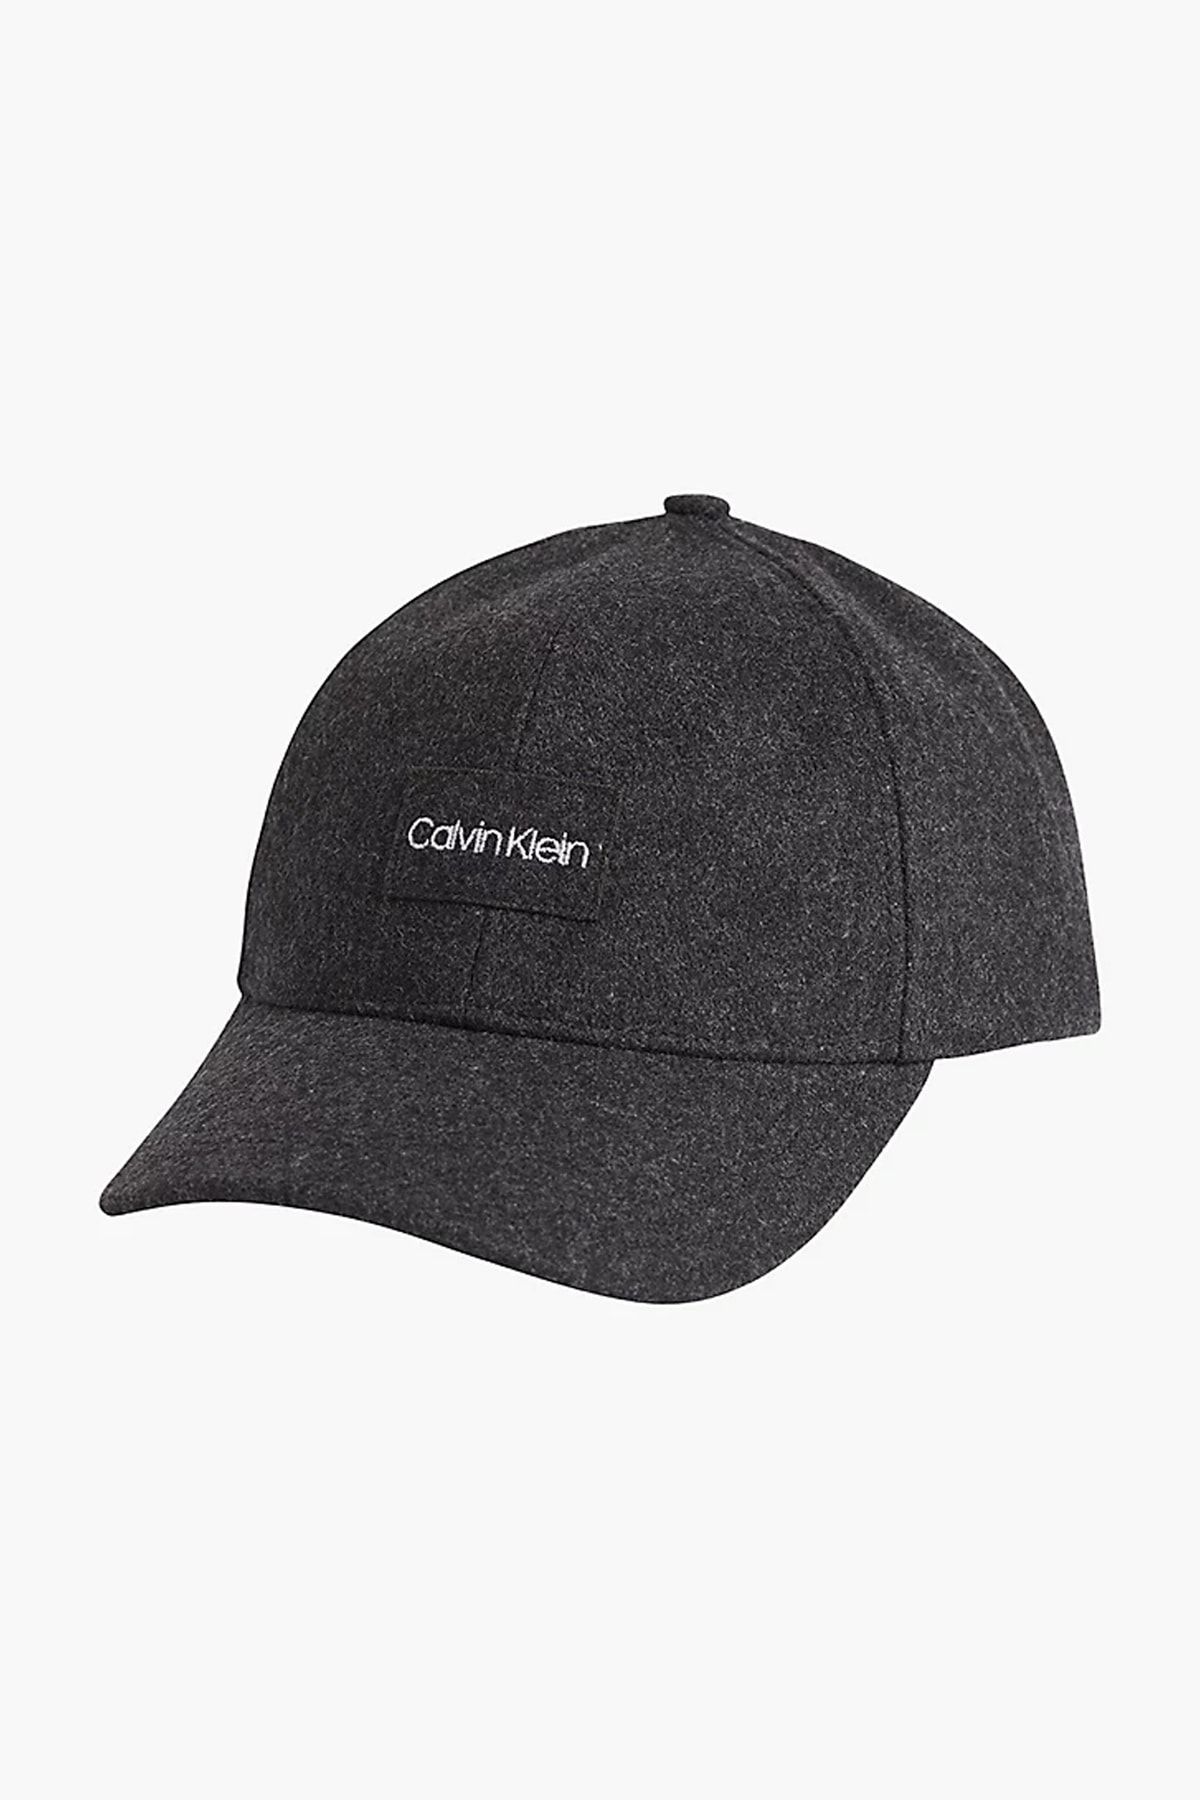 Calvin Klein Wool Erkek Baseball Şapkak50k509675